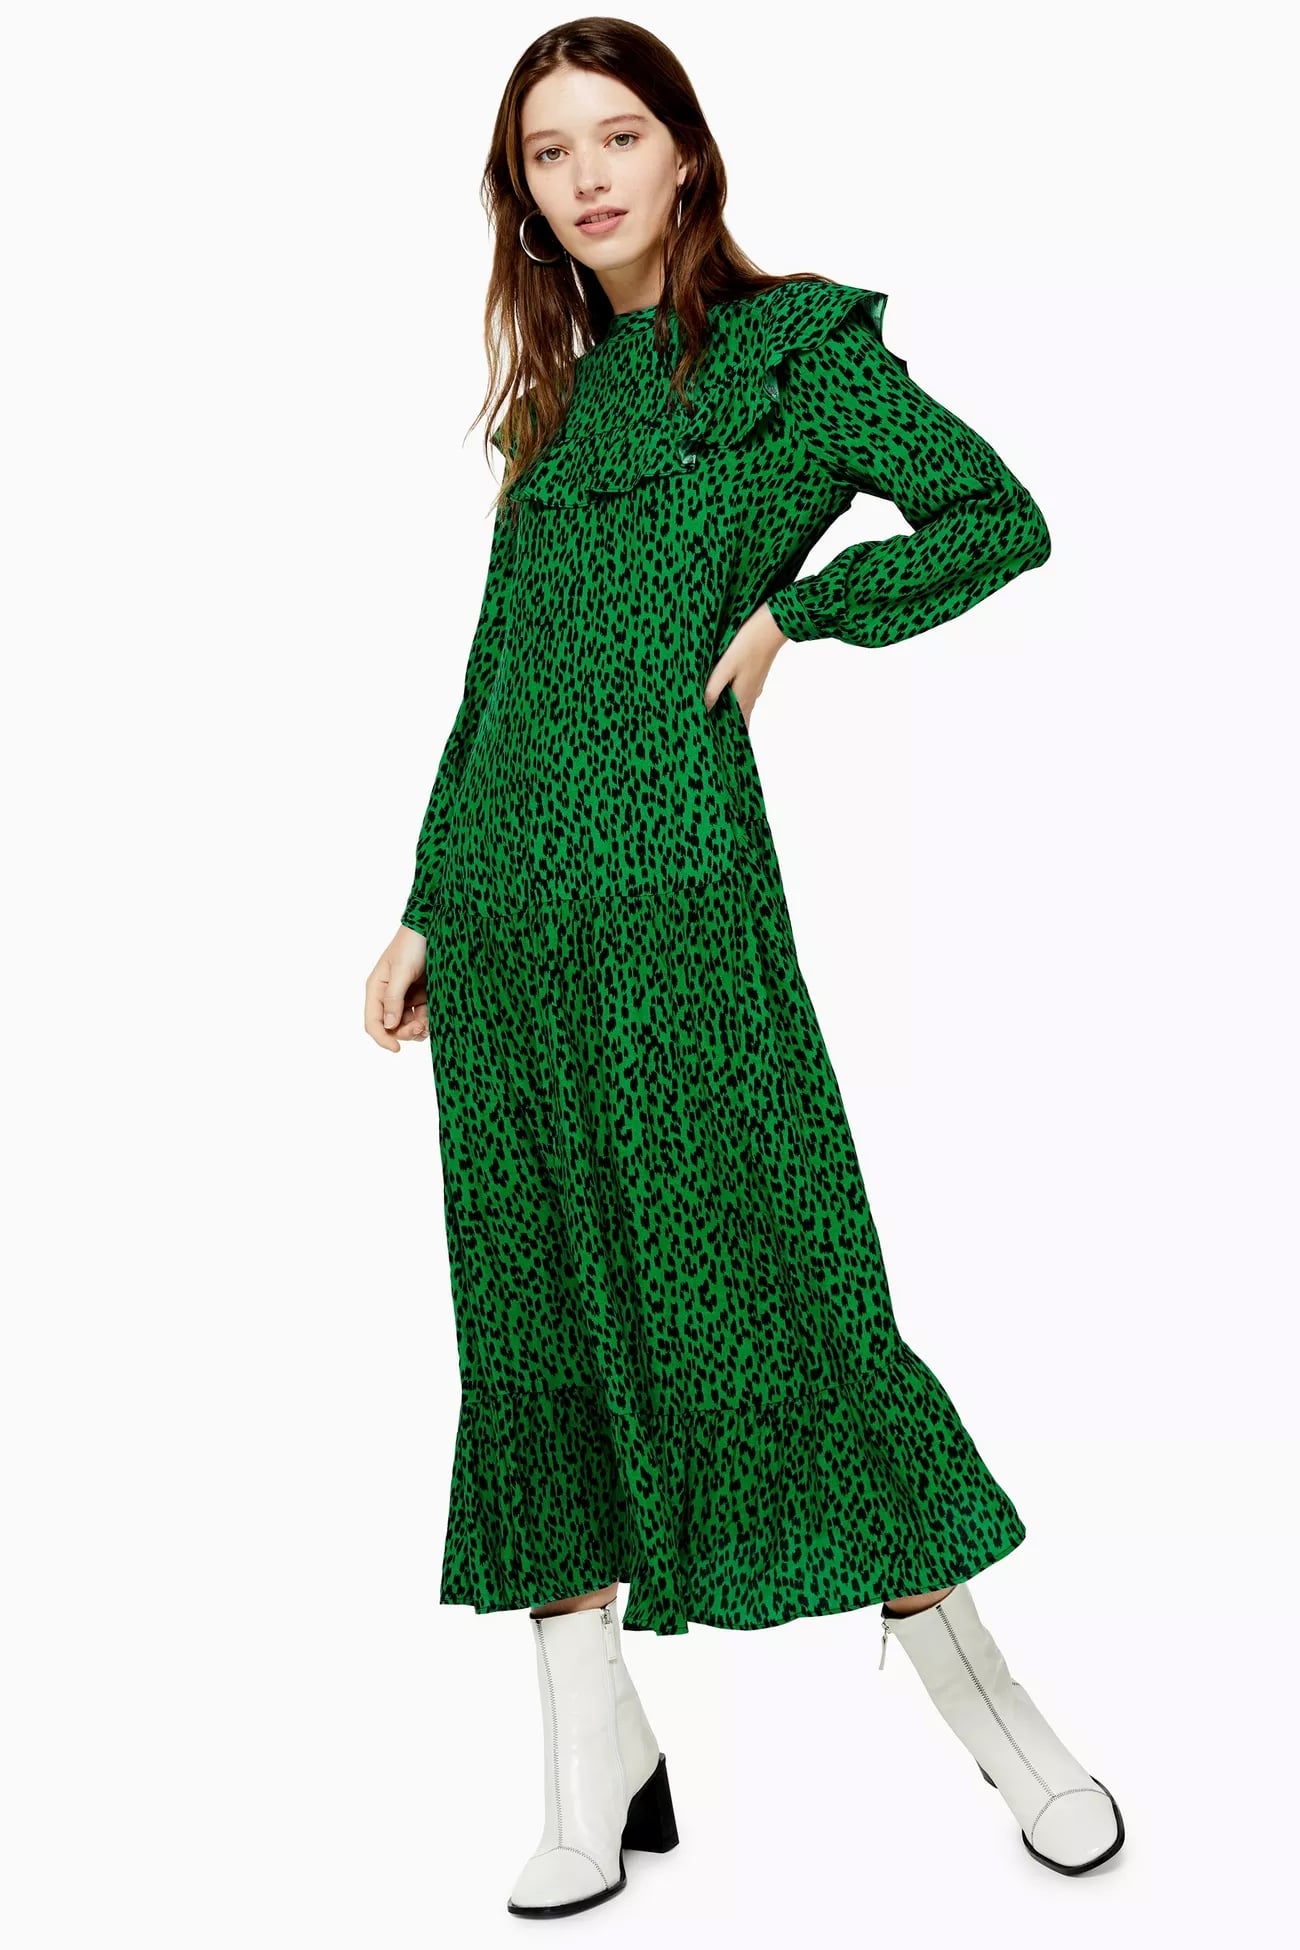 green leopard print dress